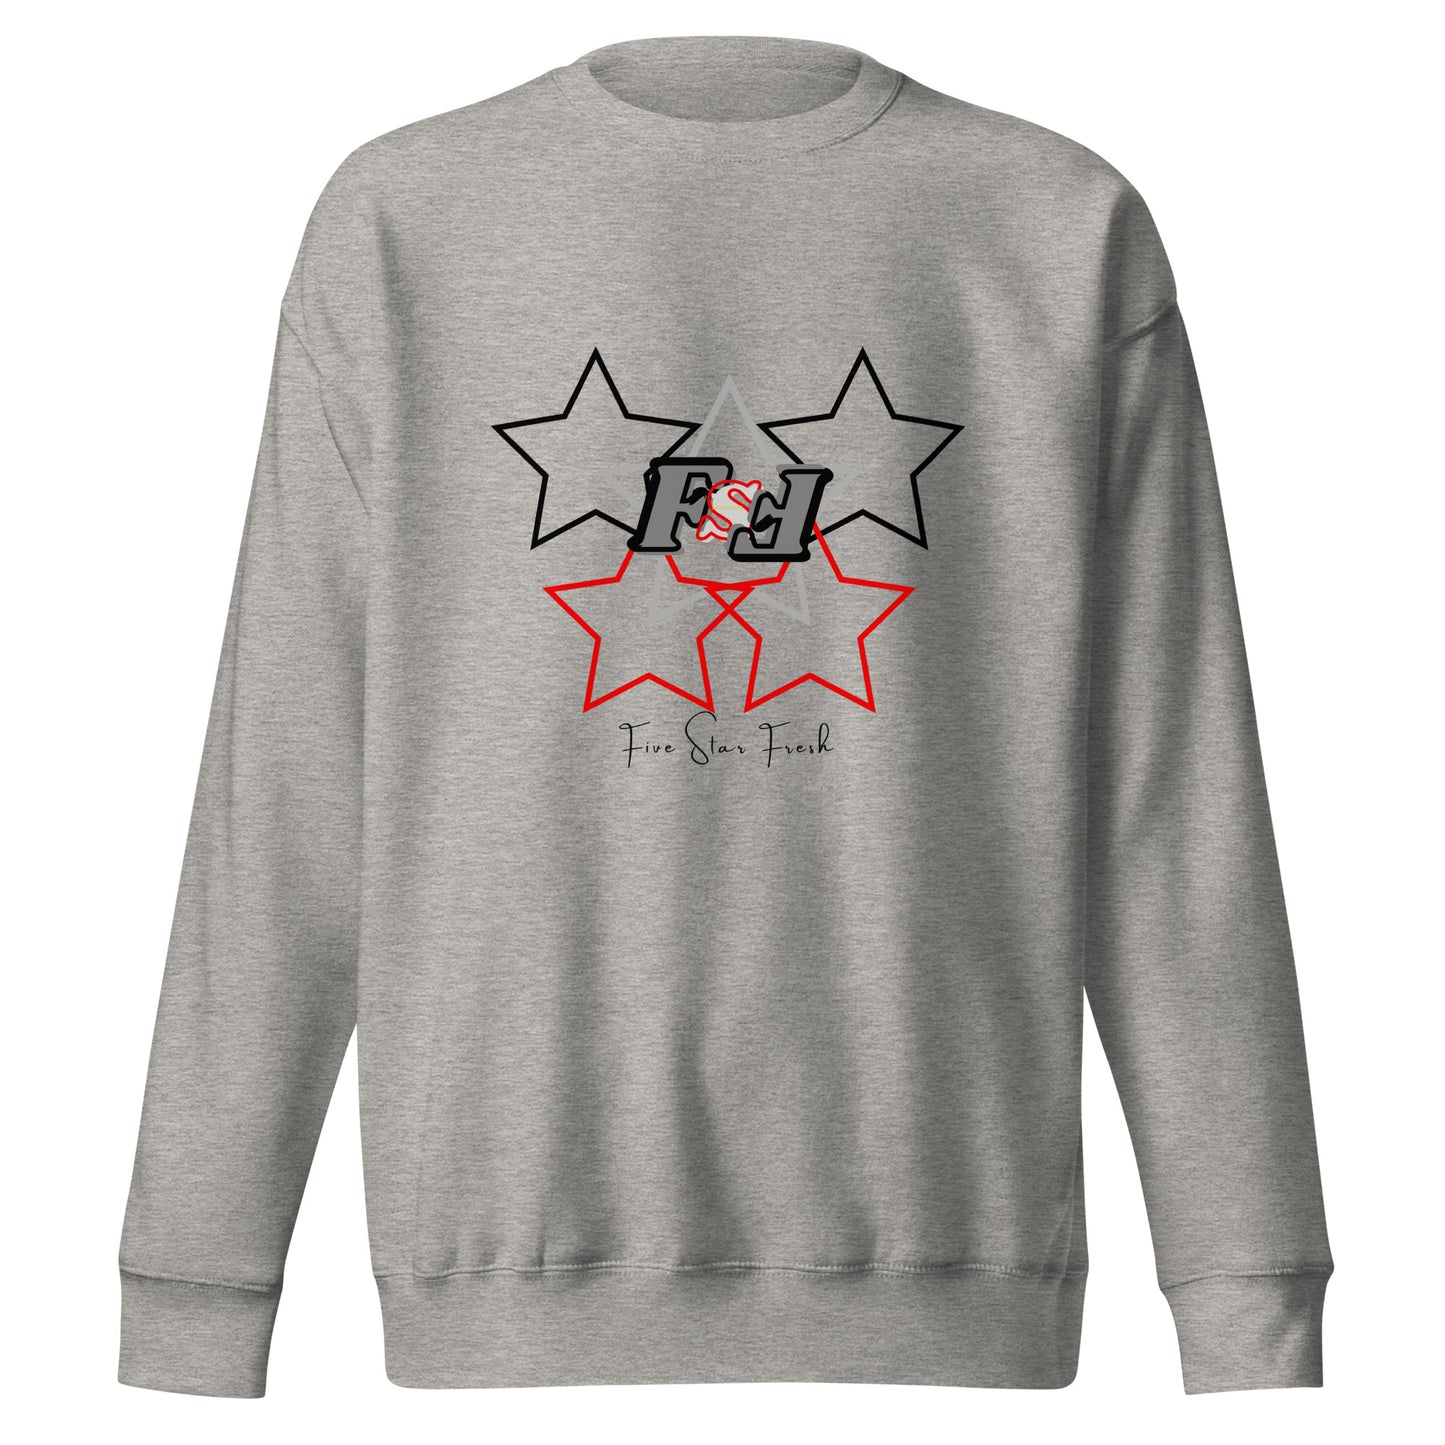 'Starz' Dark - Five Star Fresh Unisex Premium Sweatshirt